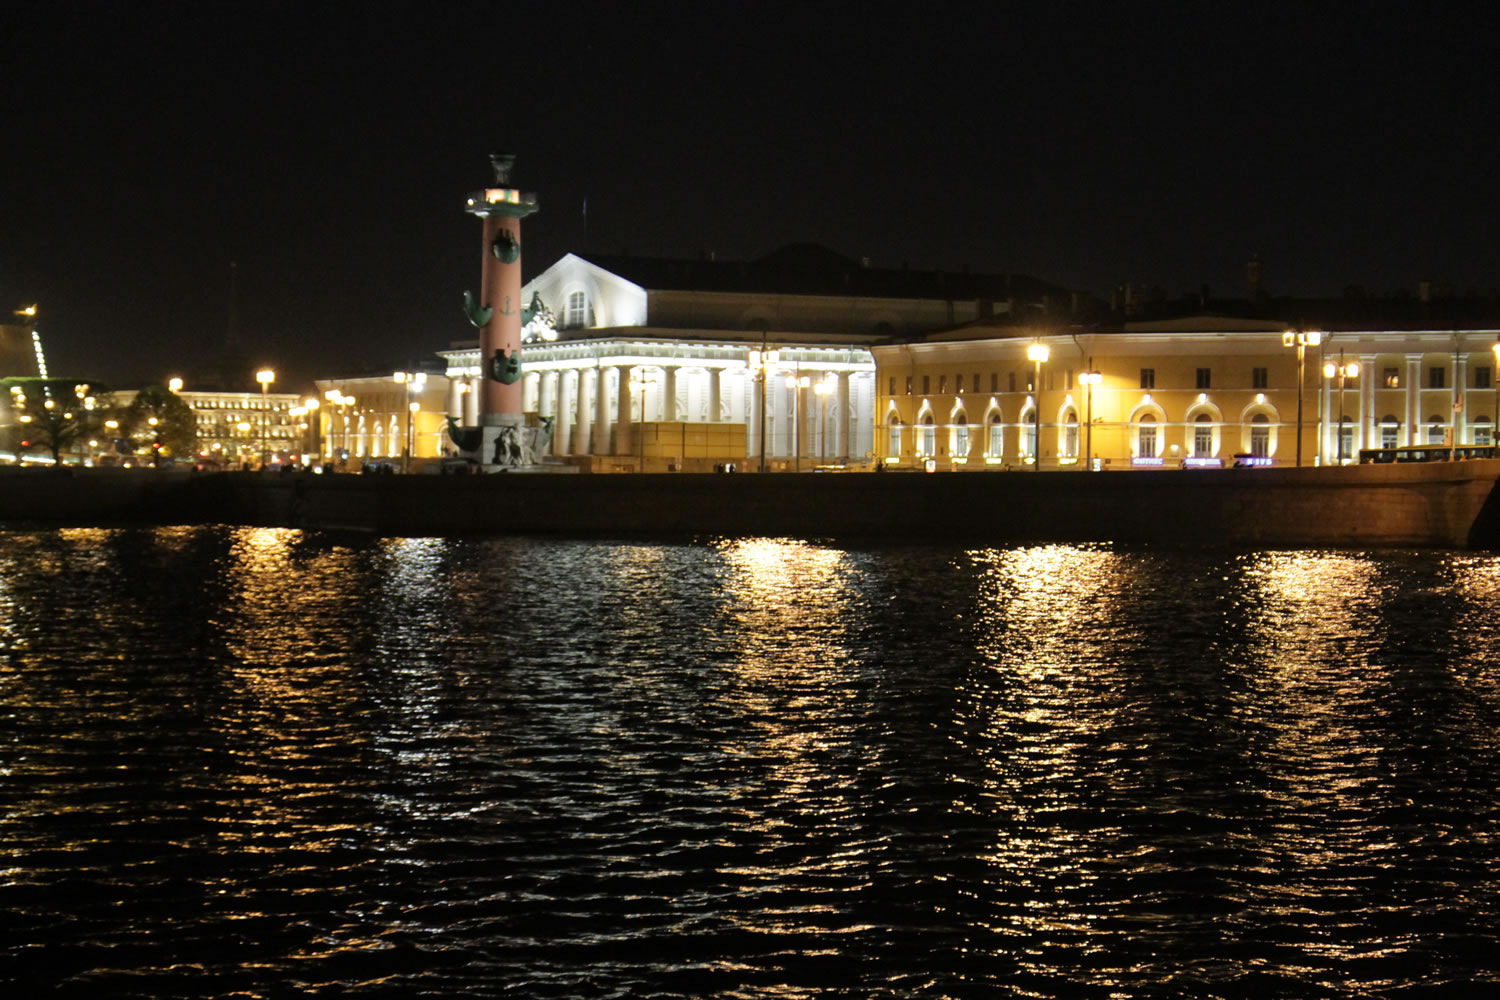 васильевский остров санкт петербург достопримечательности фото с описанием